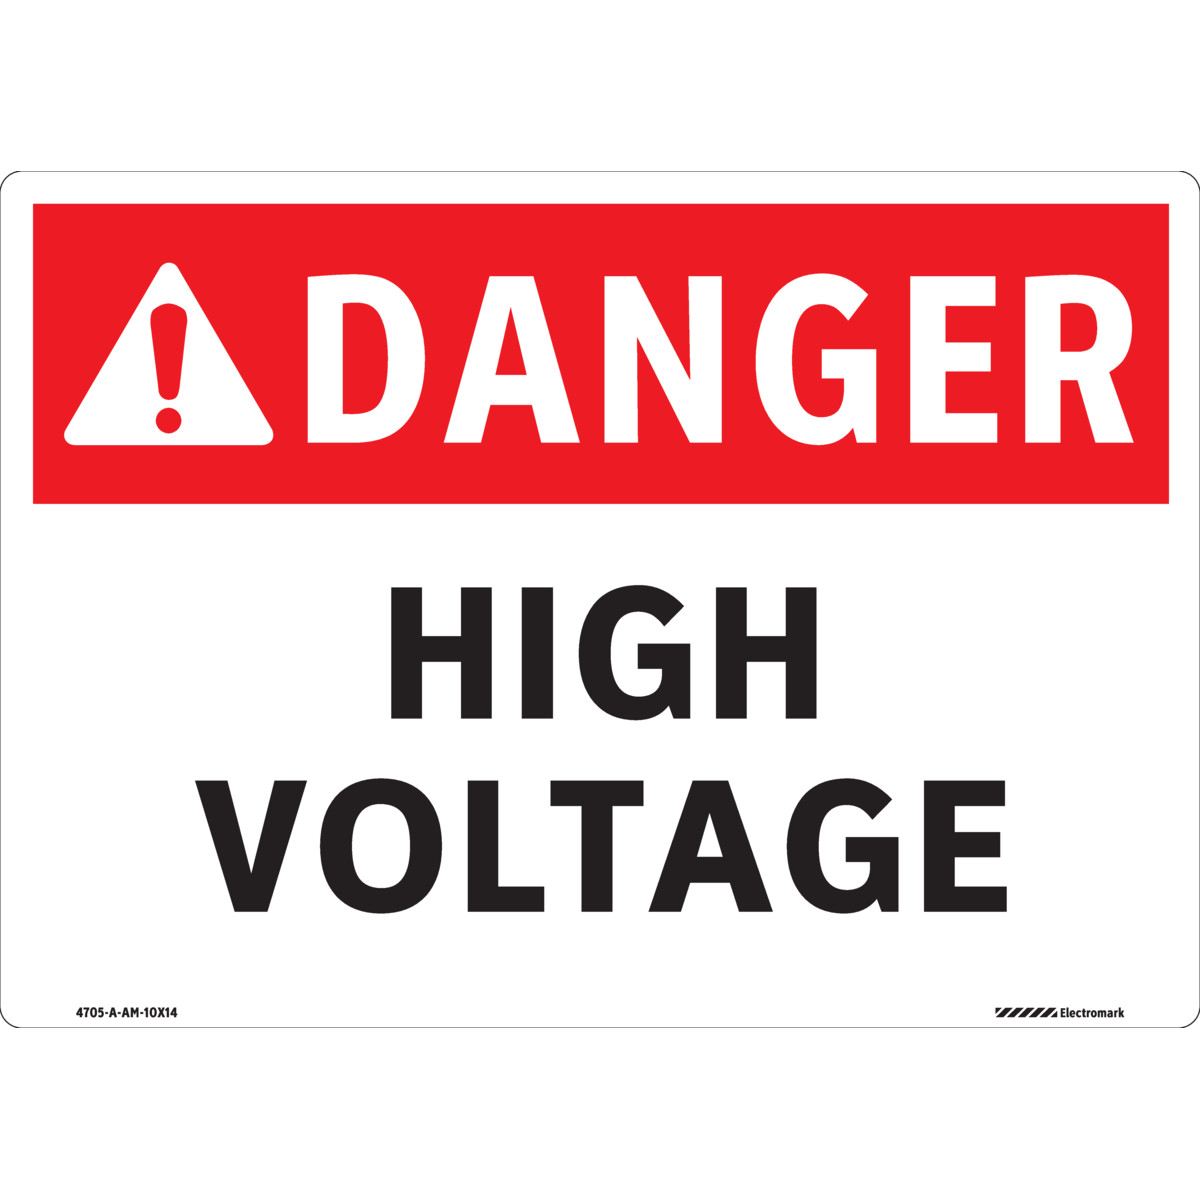 ANSI Danger High Voltage Sign